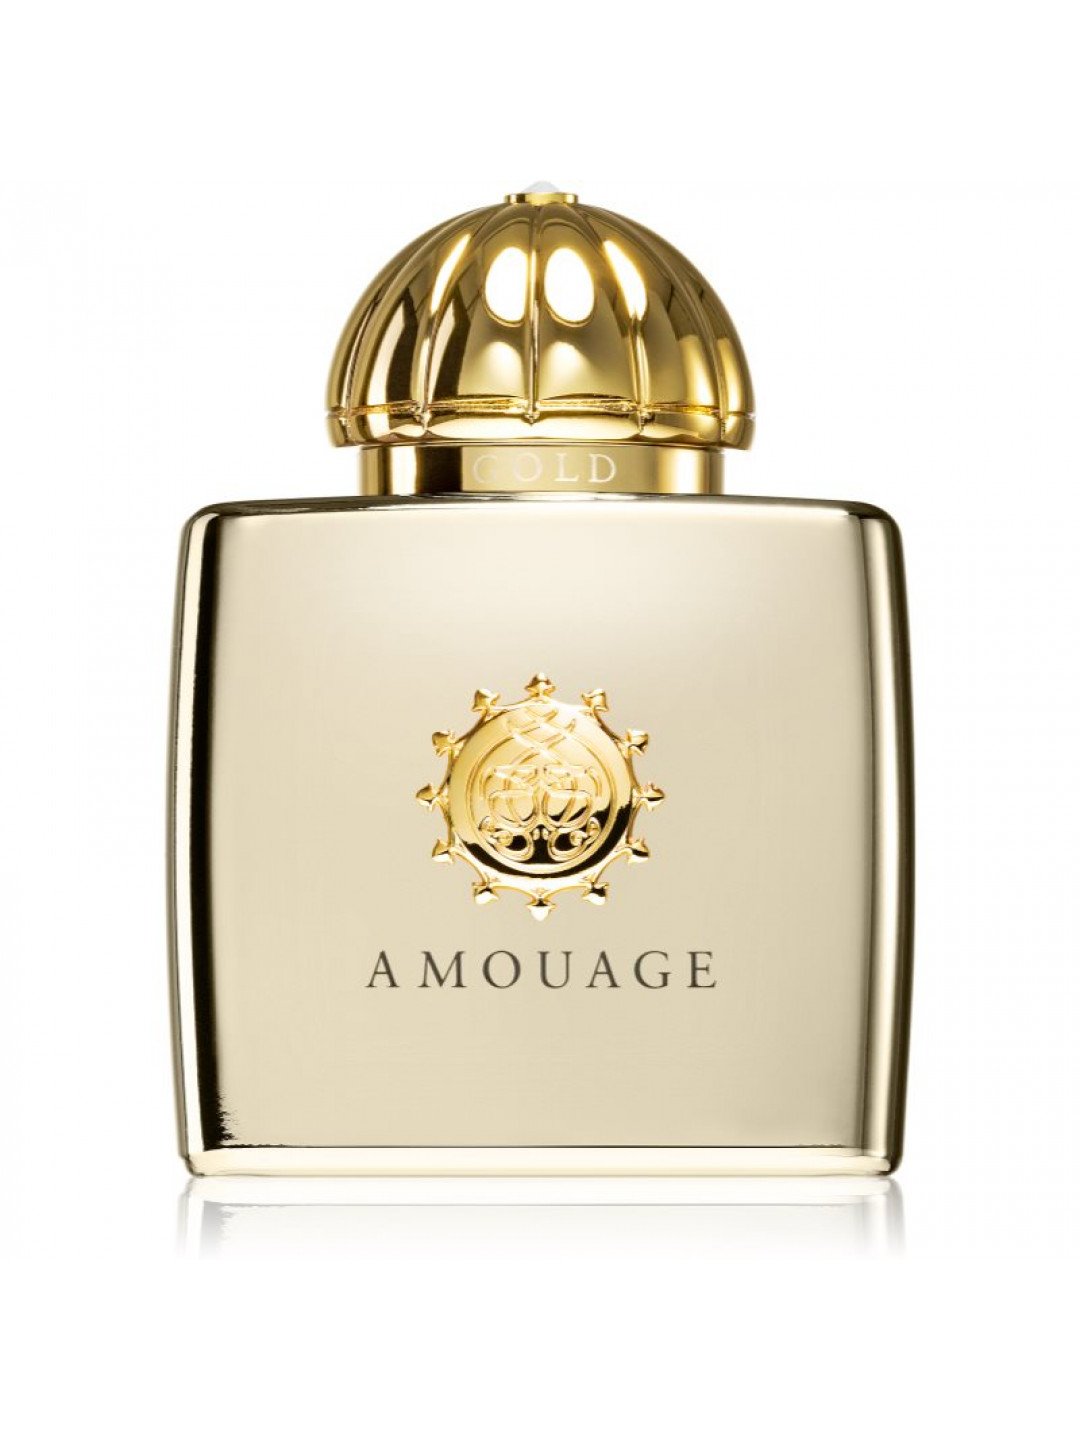 Amouage Gold parfémovaná voda pro ženy 50 ml